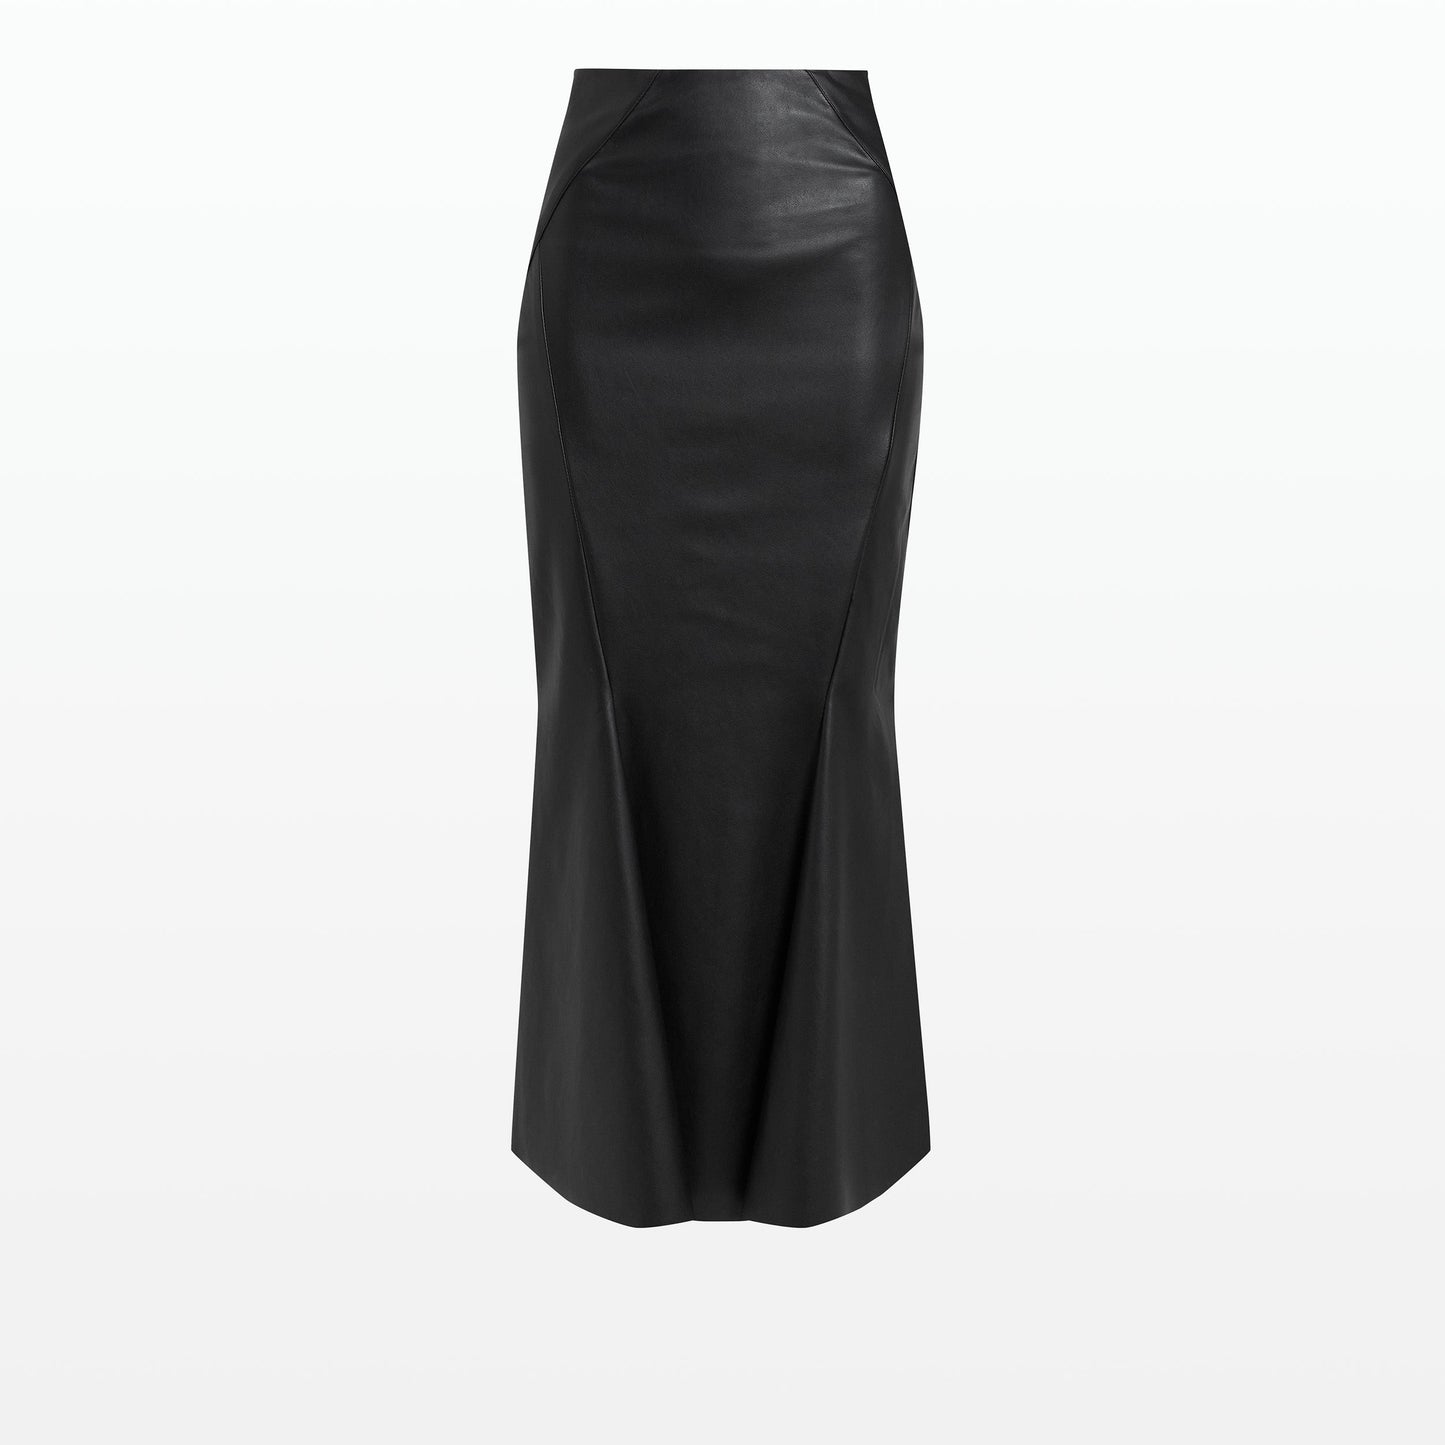 Saoirse Black Vegan Leather Skirt